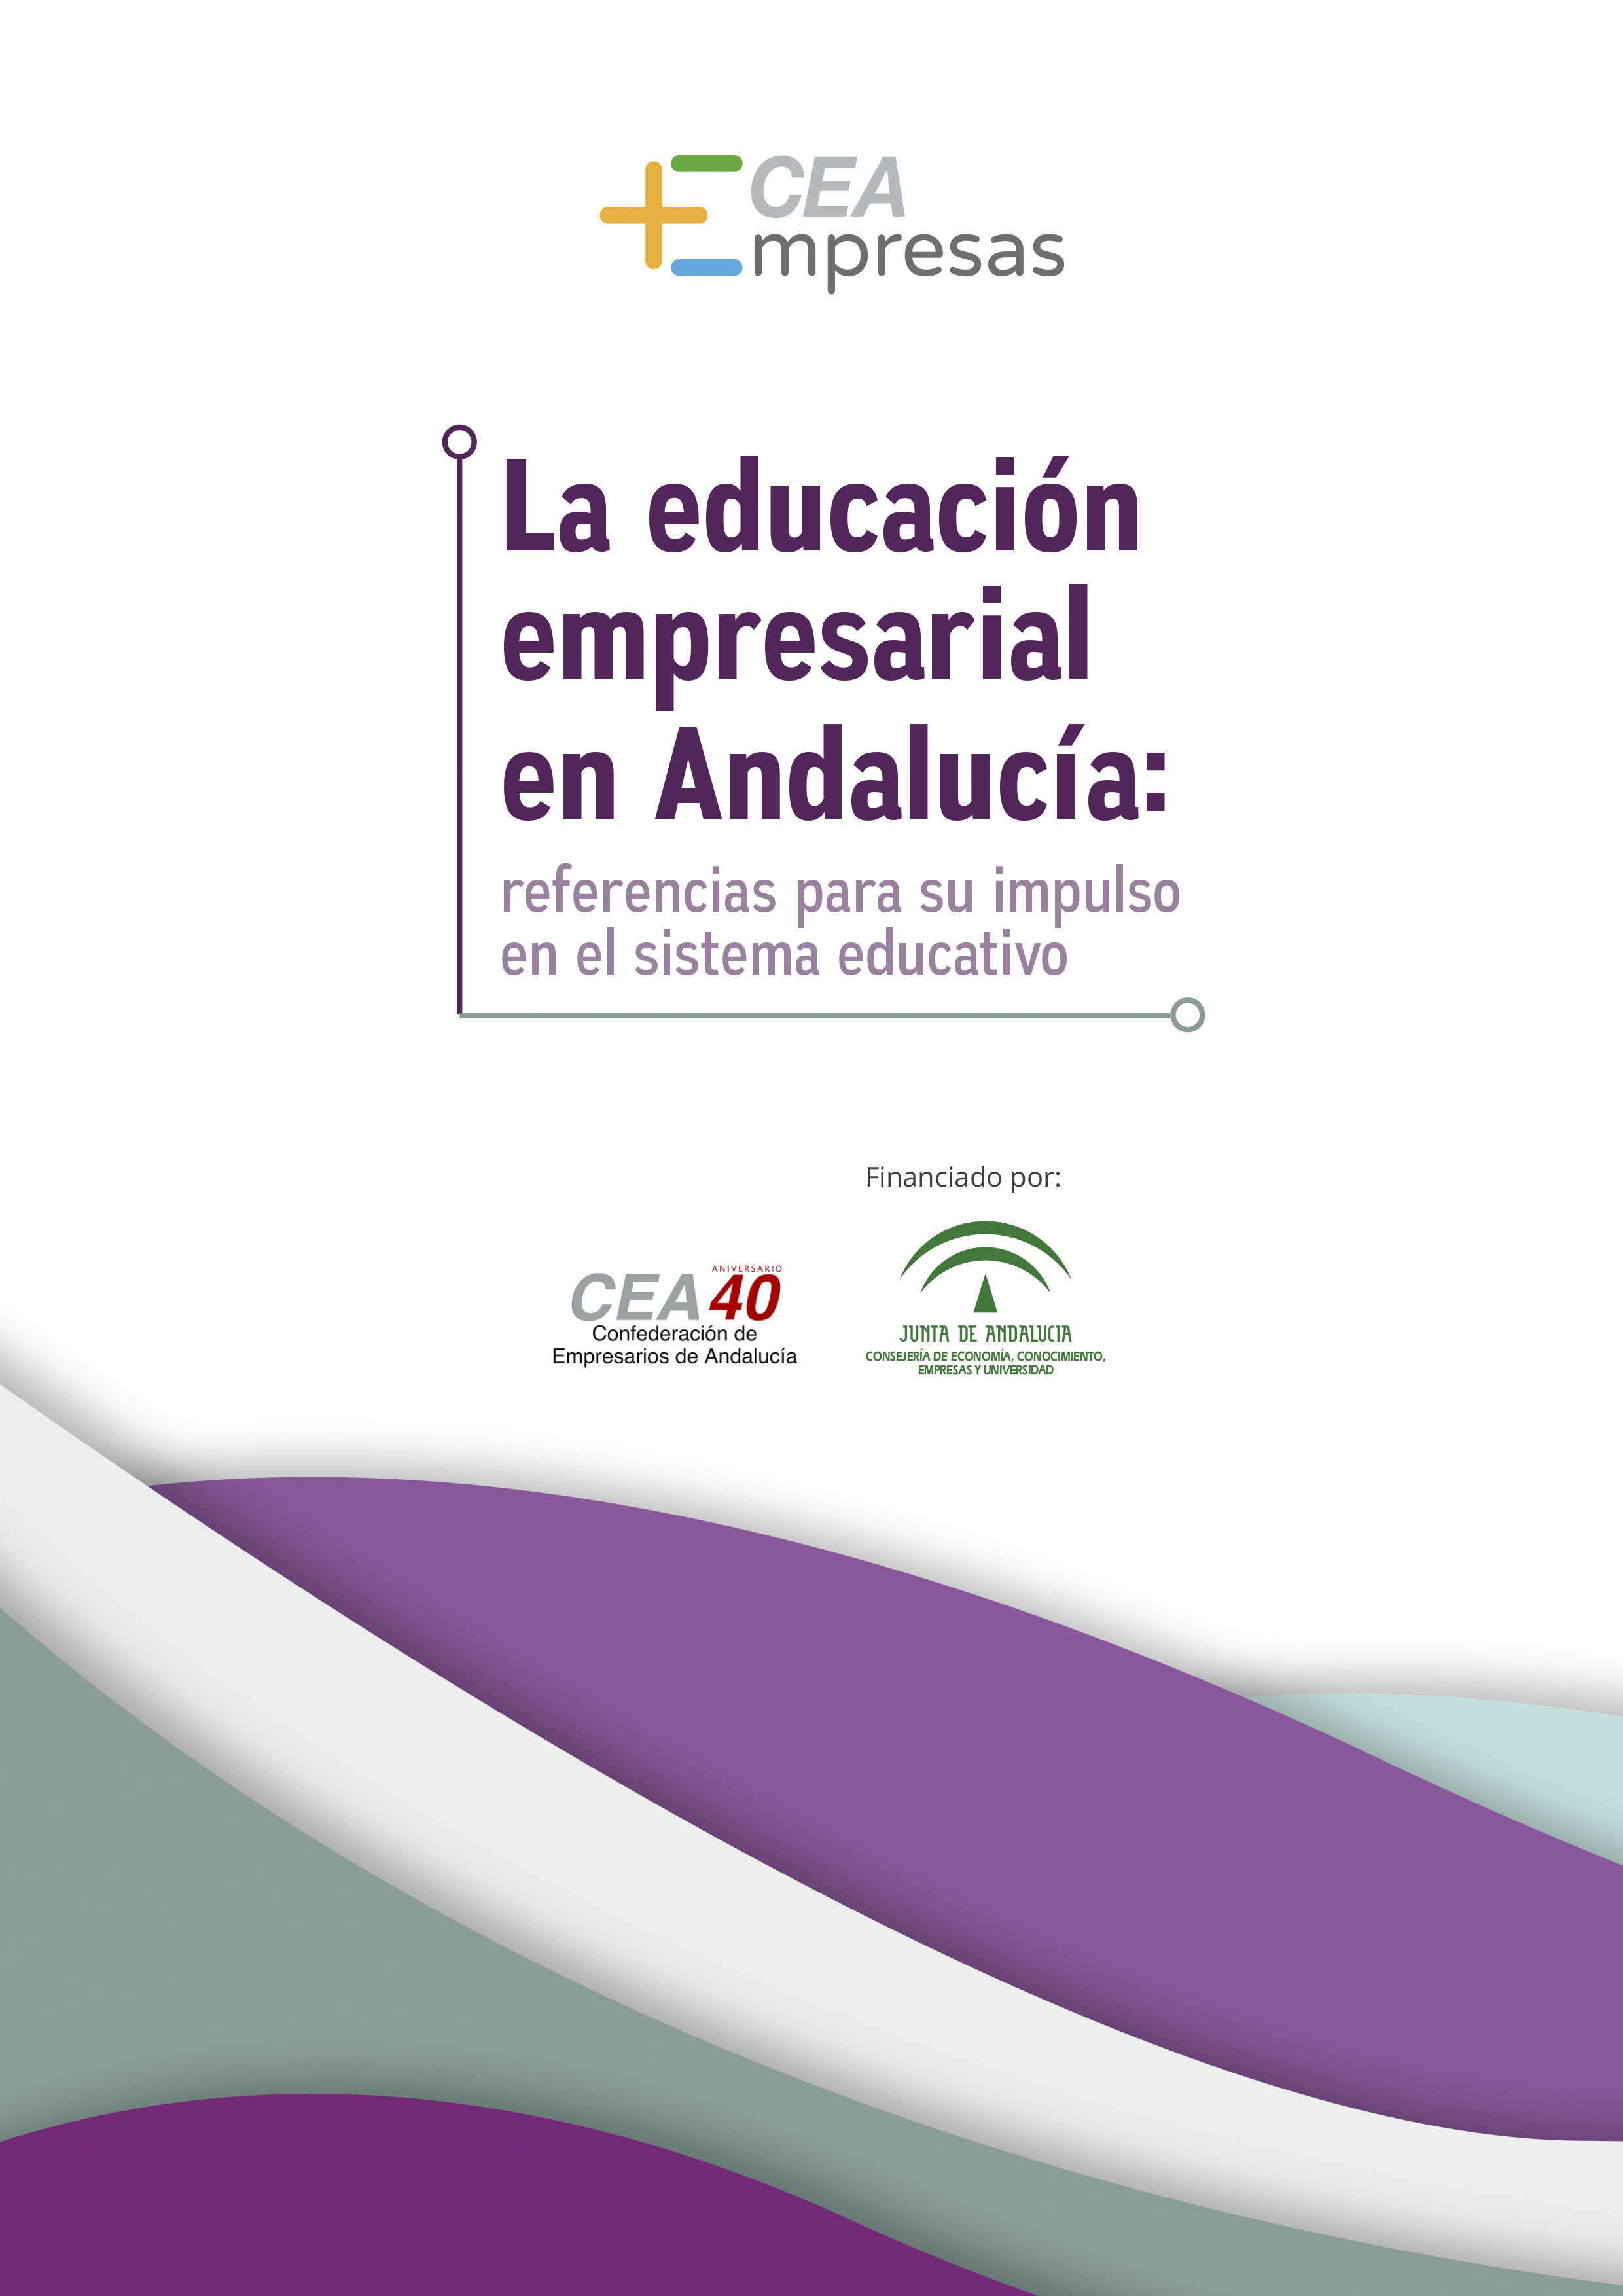 La educación empresarial en Andalucía